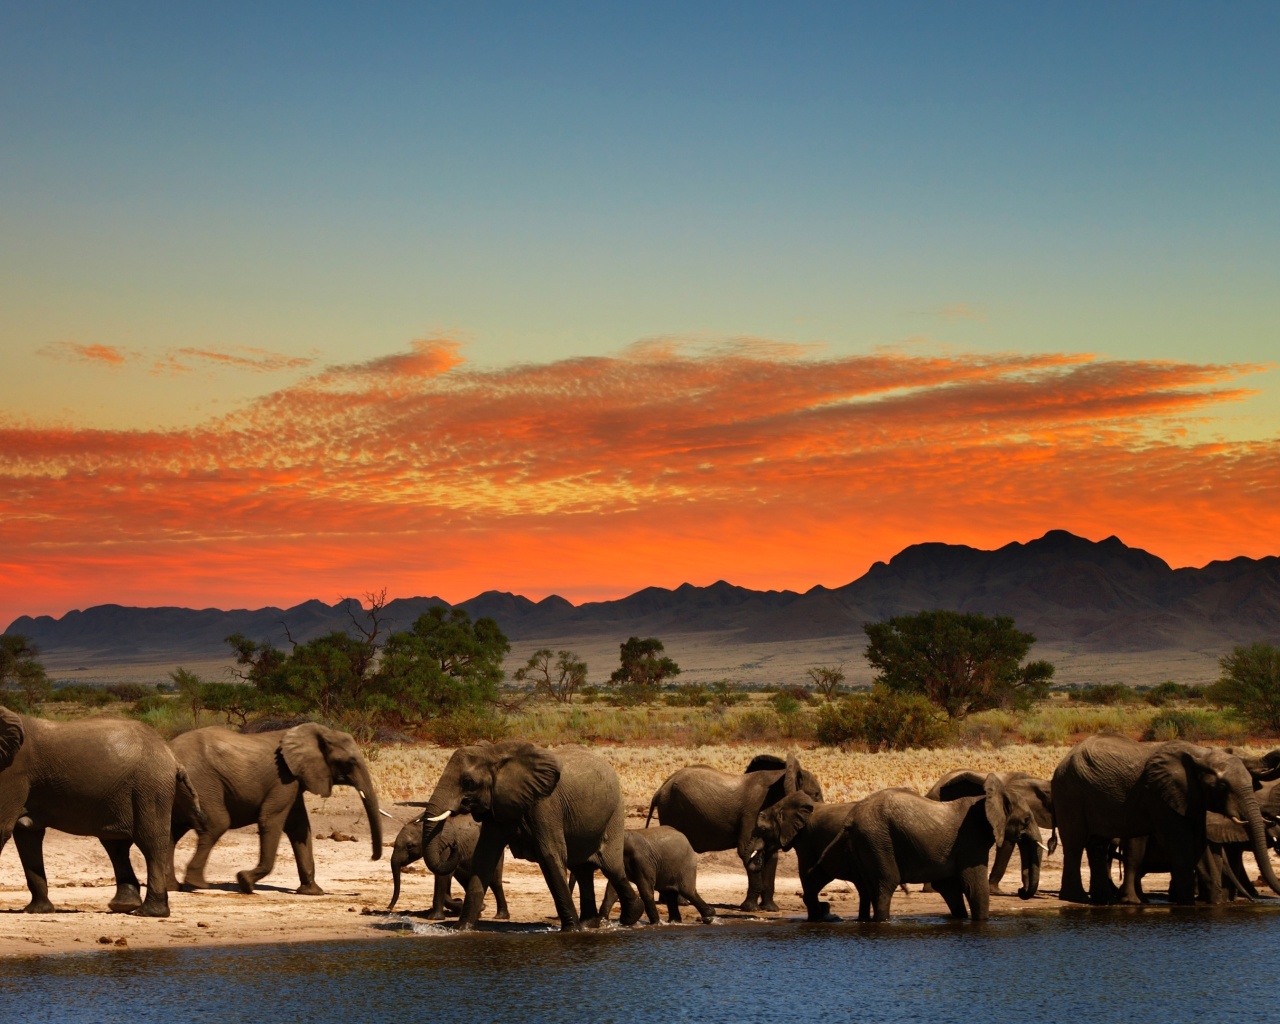 Herd of elephants Safari wallpaper 1280x1024